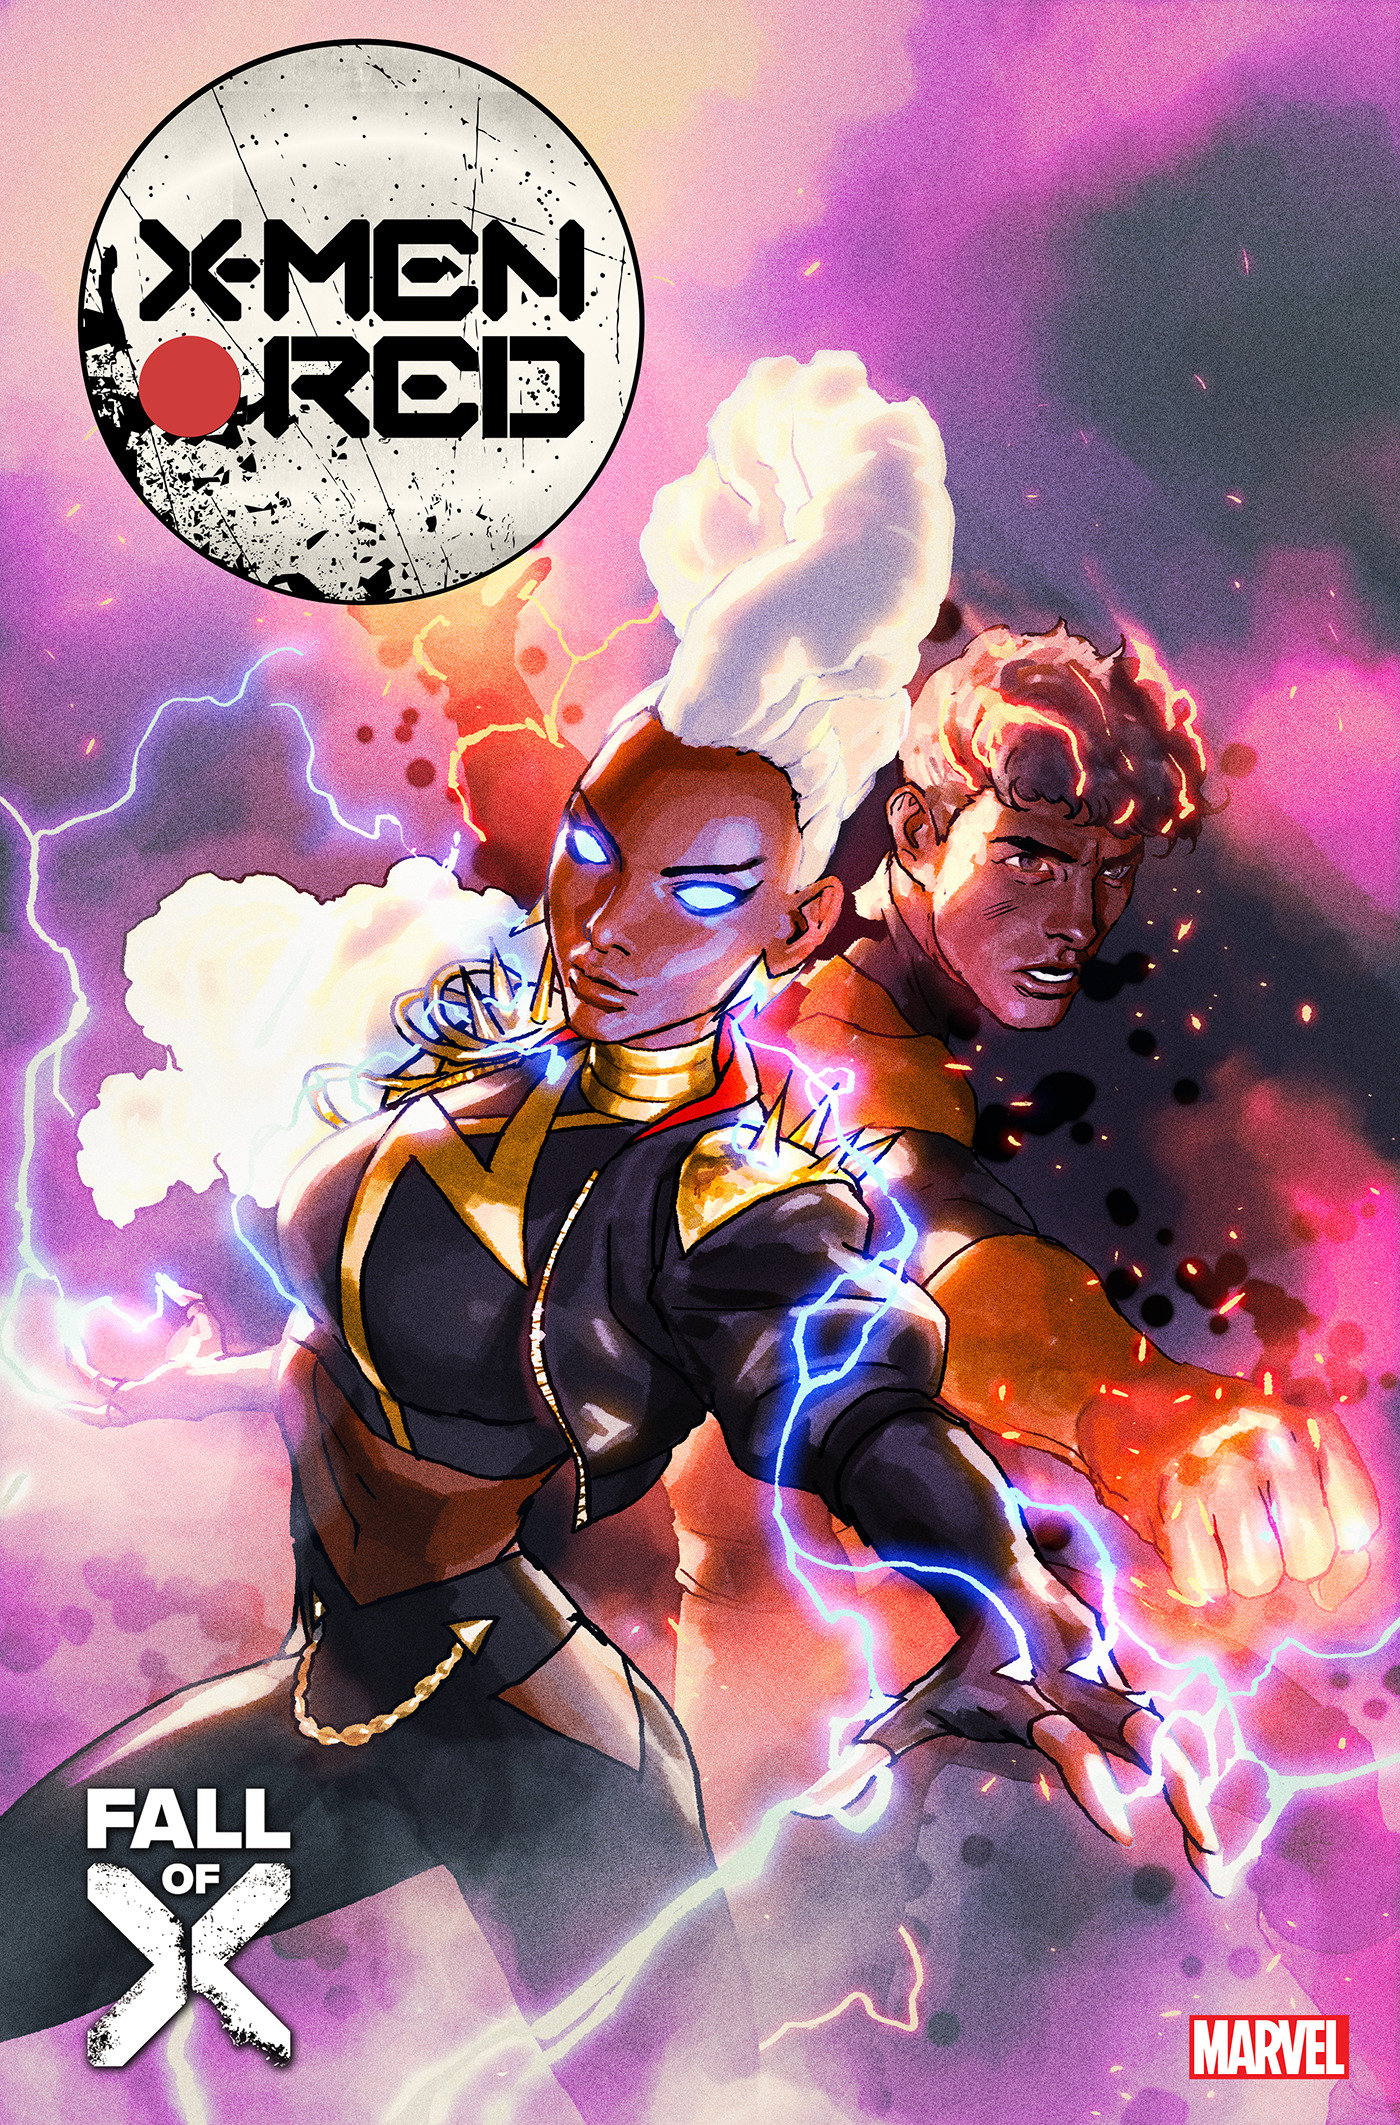 X-Men Red #16 Gerald Parel Variant (Fall of the X-Men)